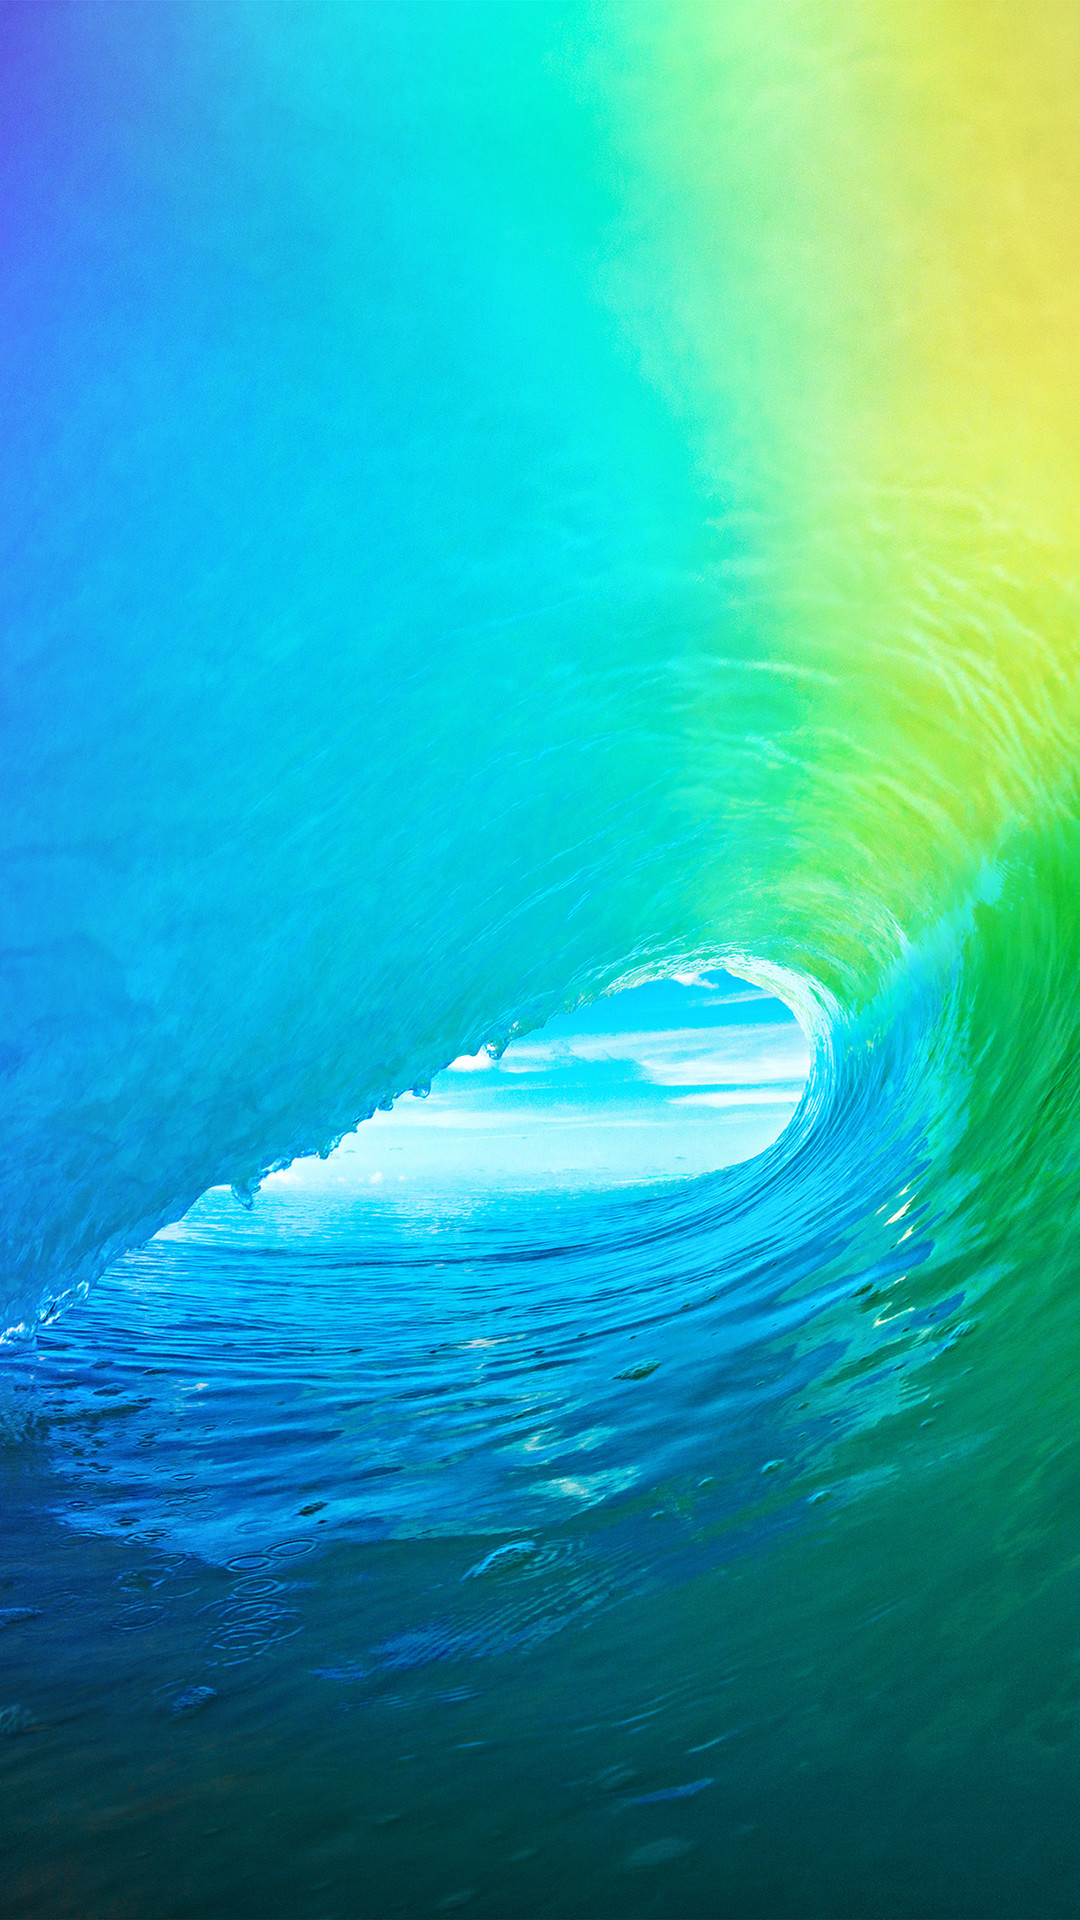 Ocean Wave IPhone Wallpaper (79+ images)